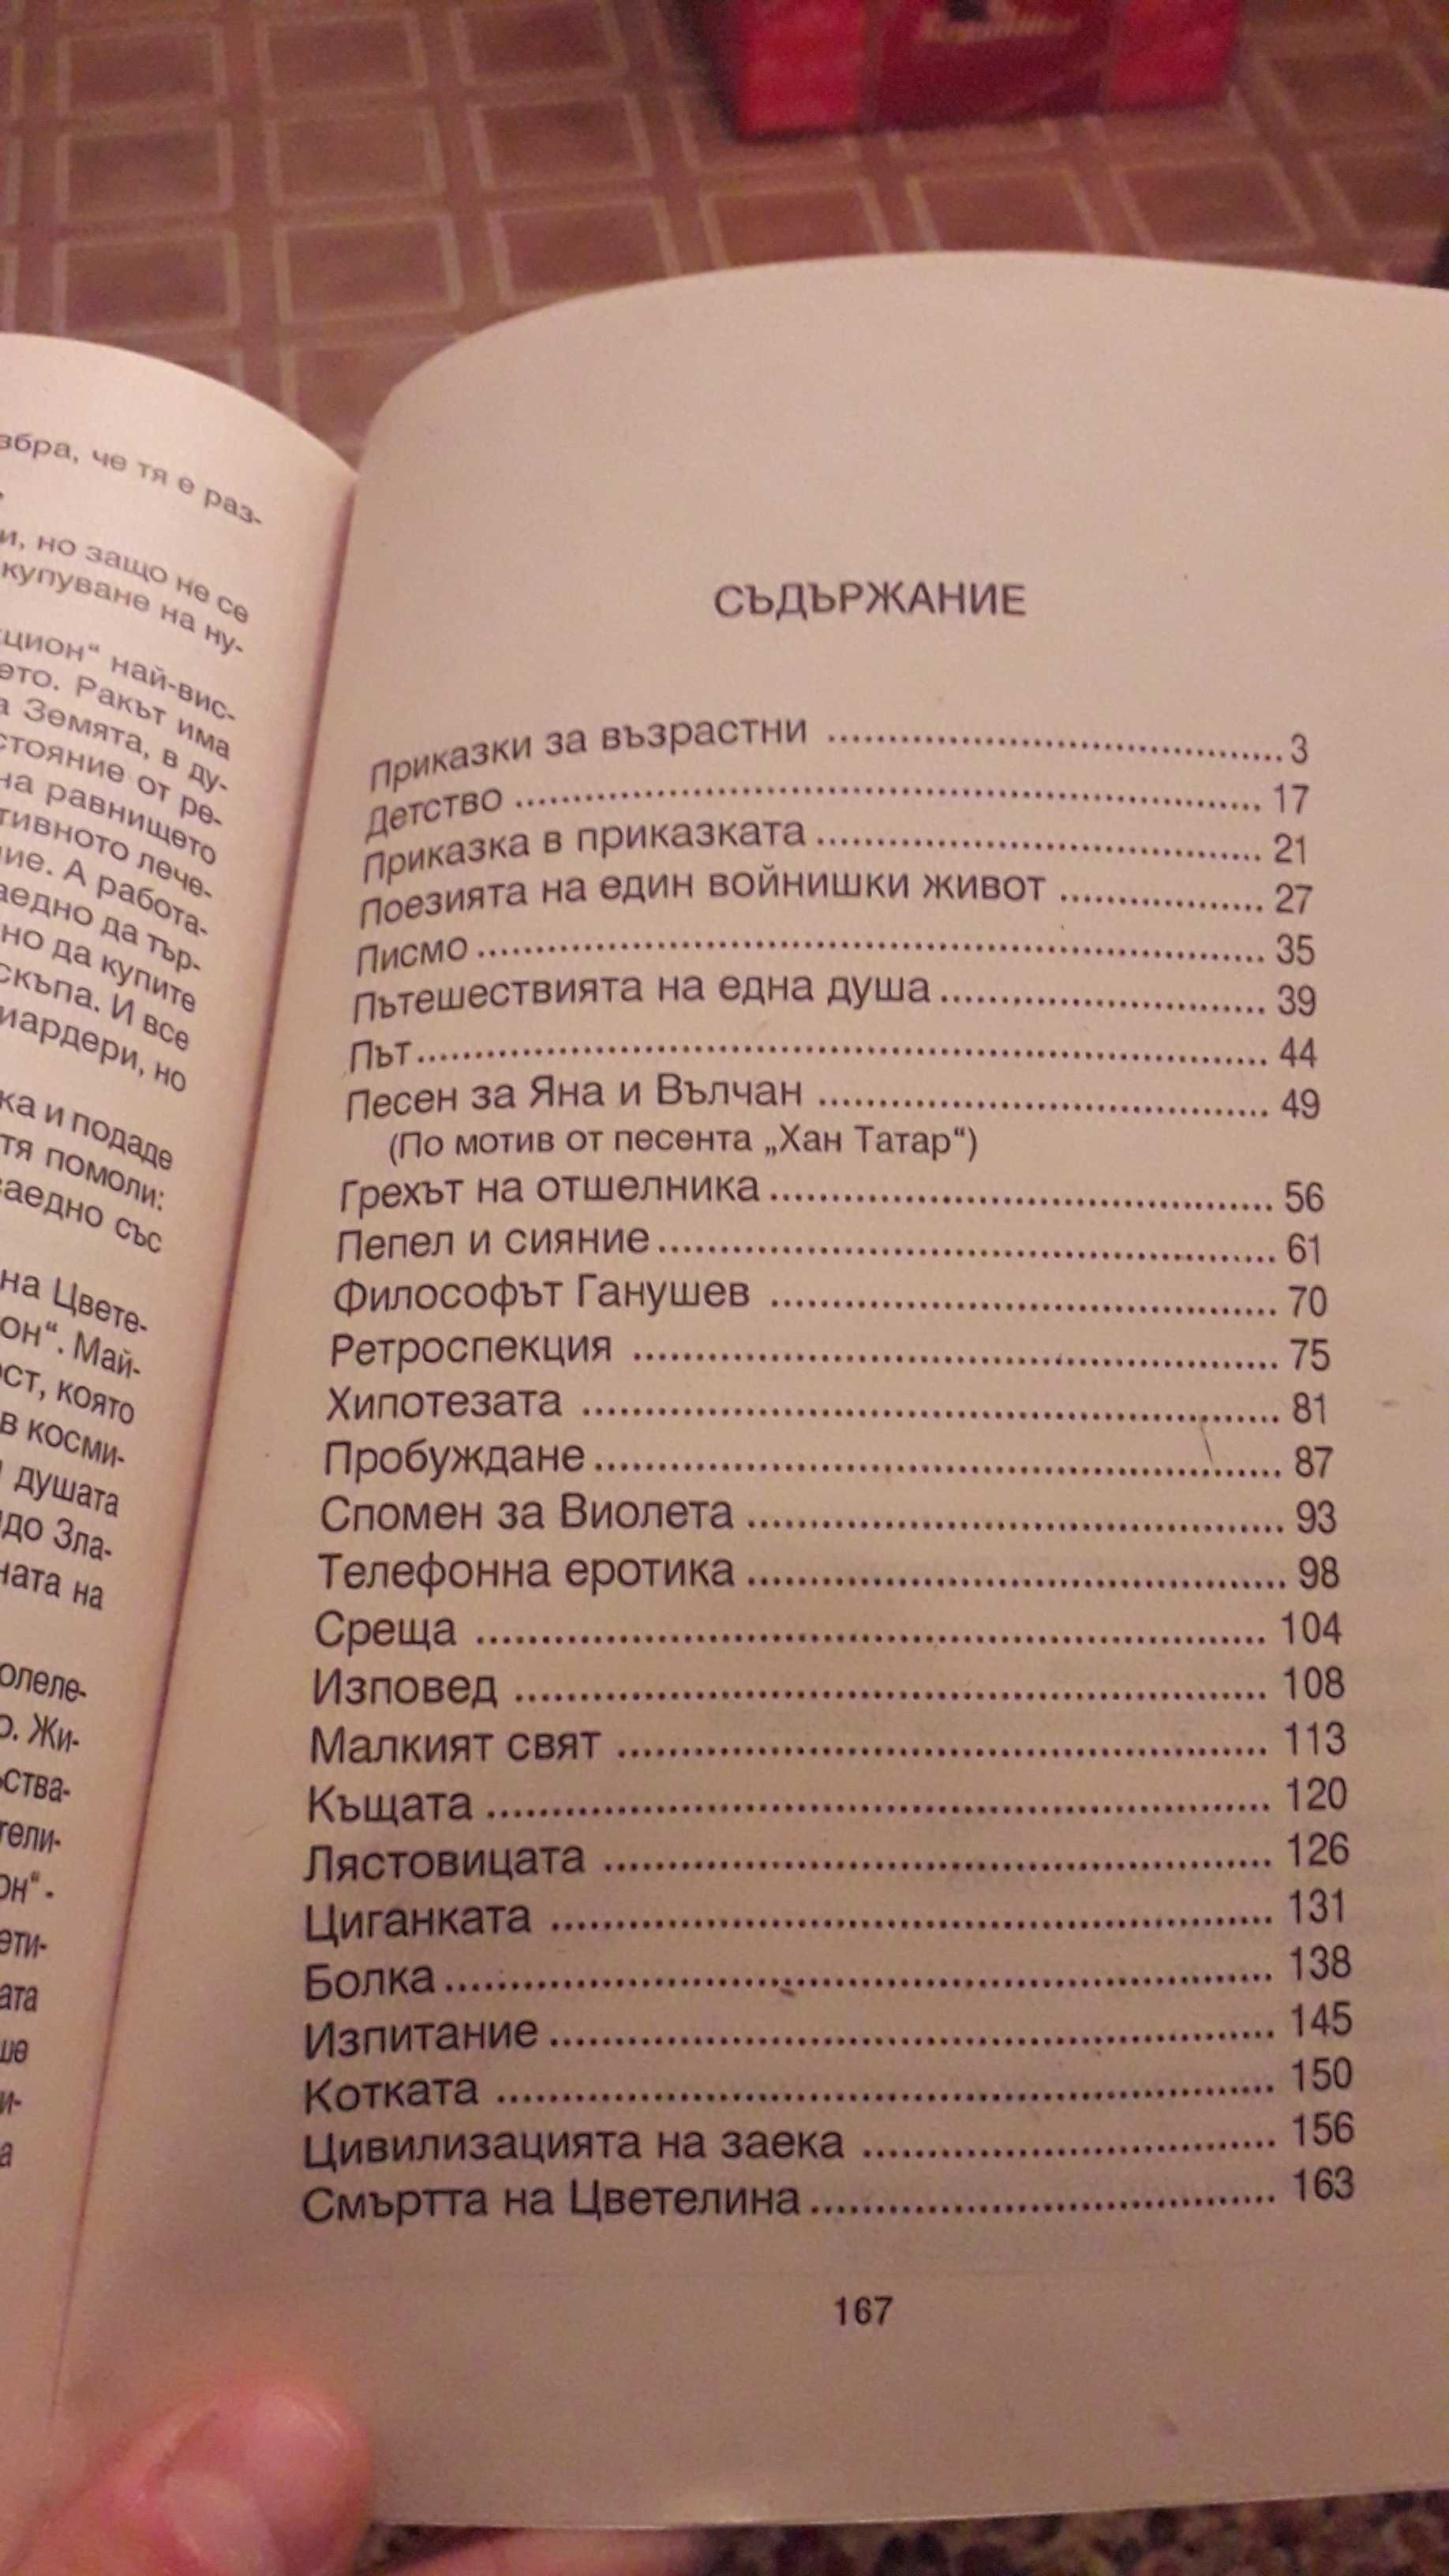 Книга с разкази "Страдание и мъдрост" на автора Живко Гешев..700 копия